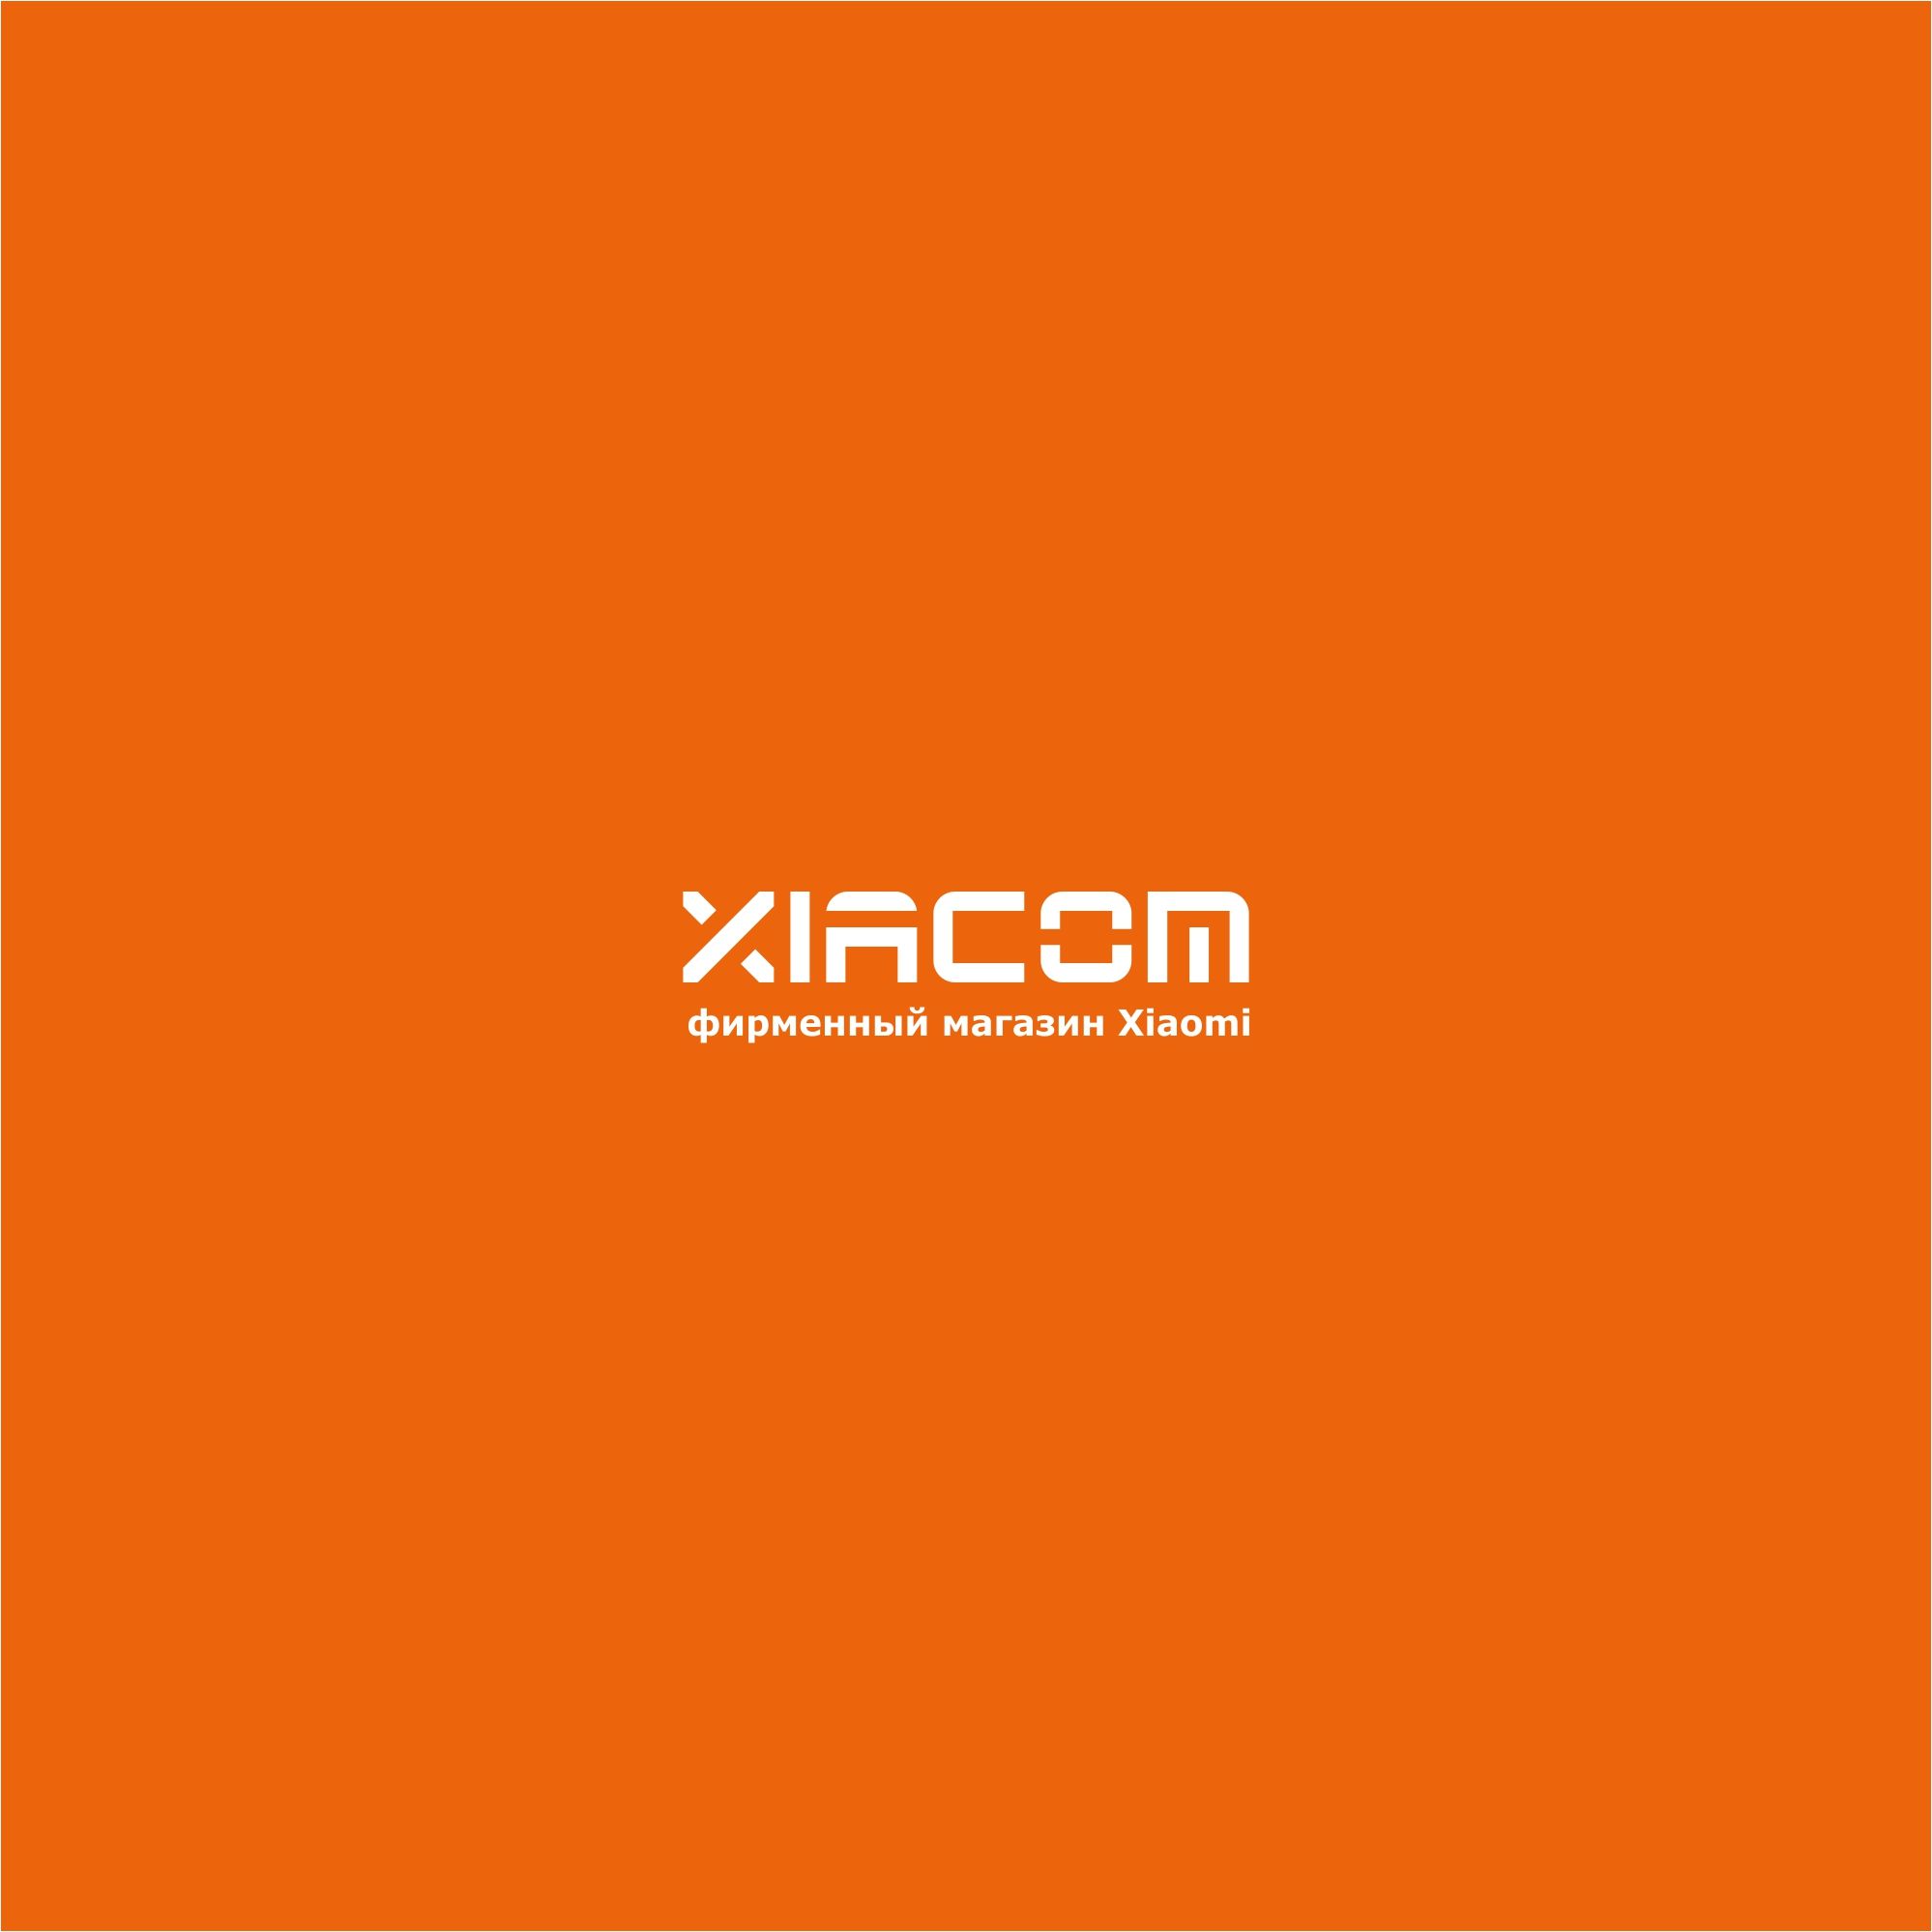 Логотип для Xiacom - дизайнер serz4868